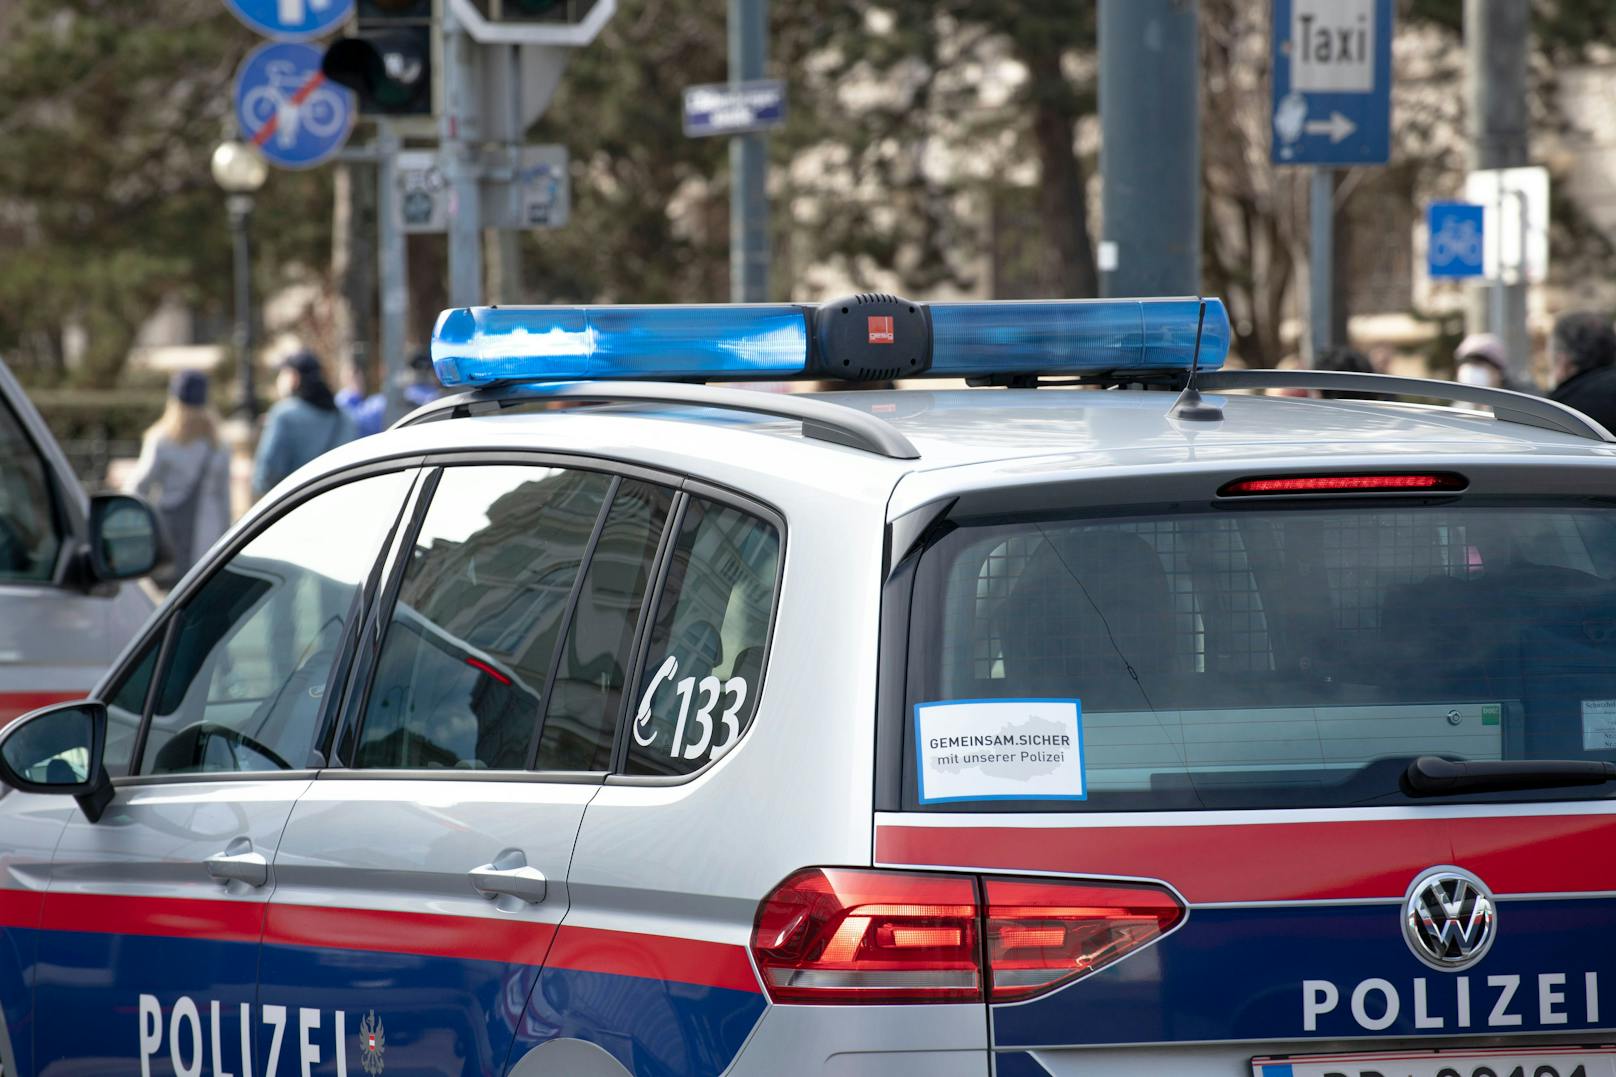 Wiener Polizei im Einsatz. Im Bild: Mehrere Fahrzeuge der Wiener Polizei befinden sich im Einsatz. (Symbolbild)